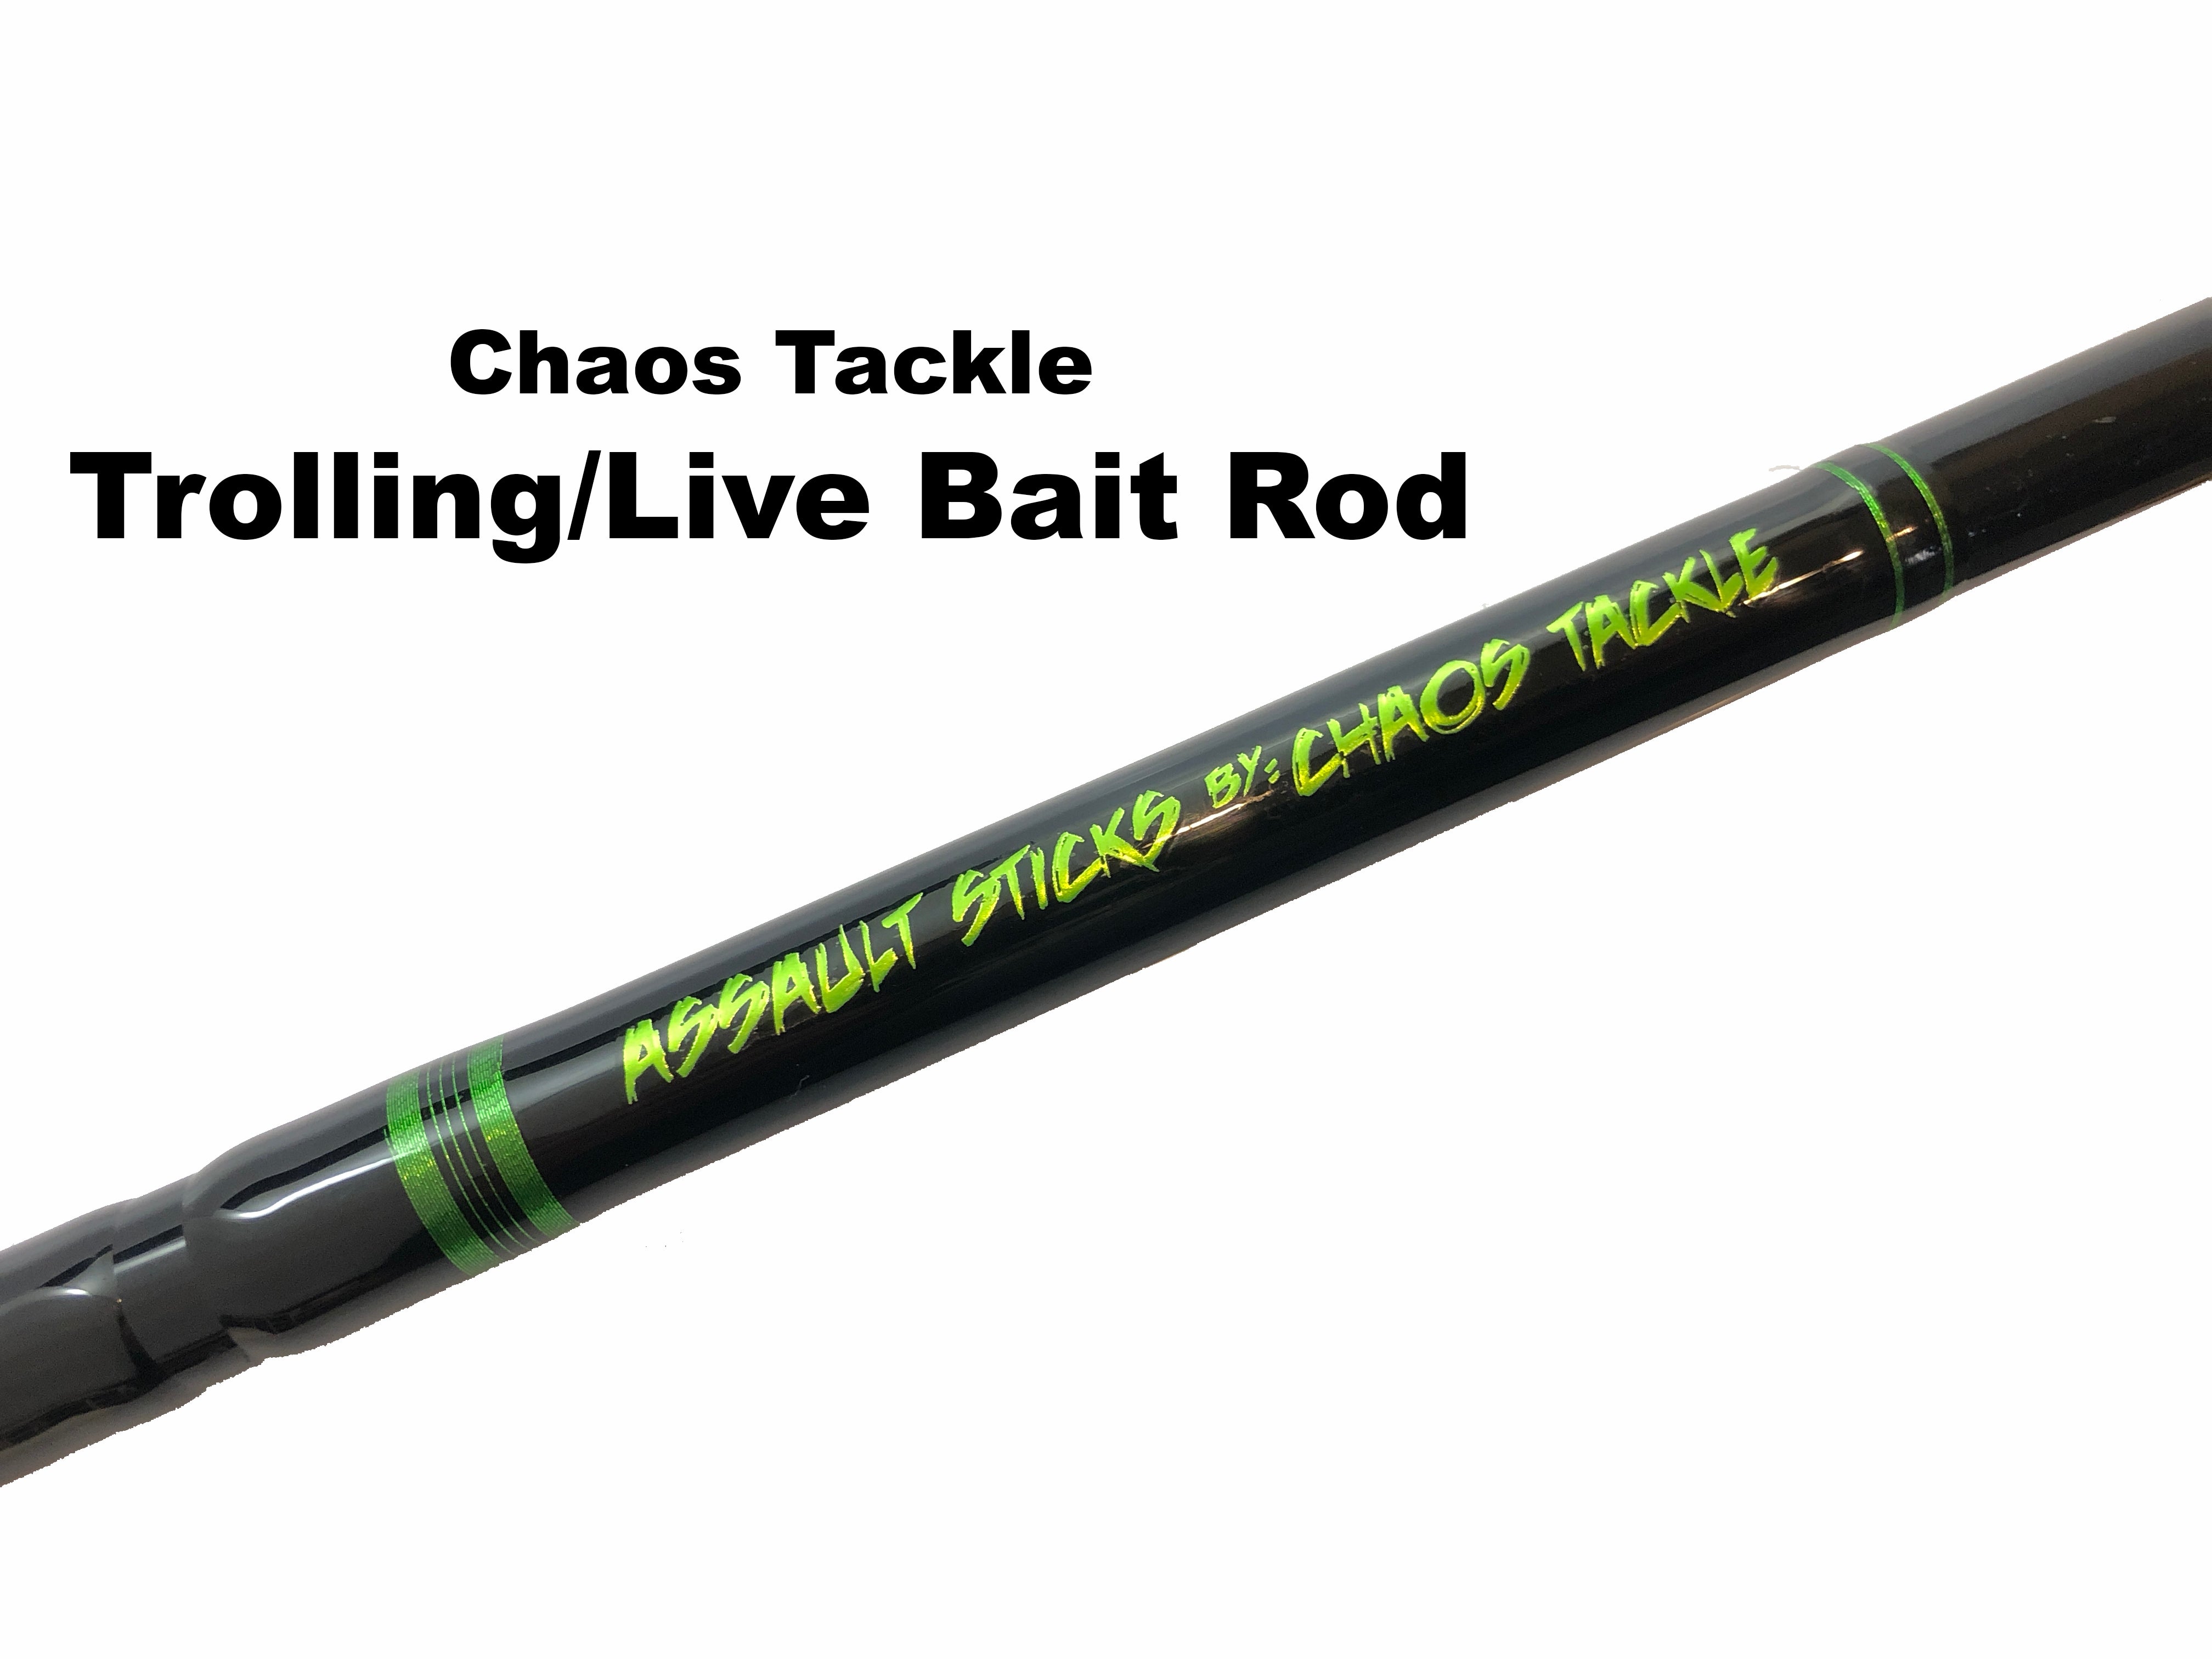 Chaos Tackle Assault Trolling/Live Bait Rod ($139.95 plus $15.95